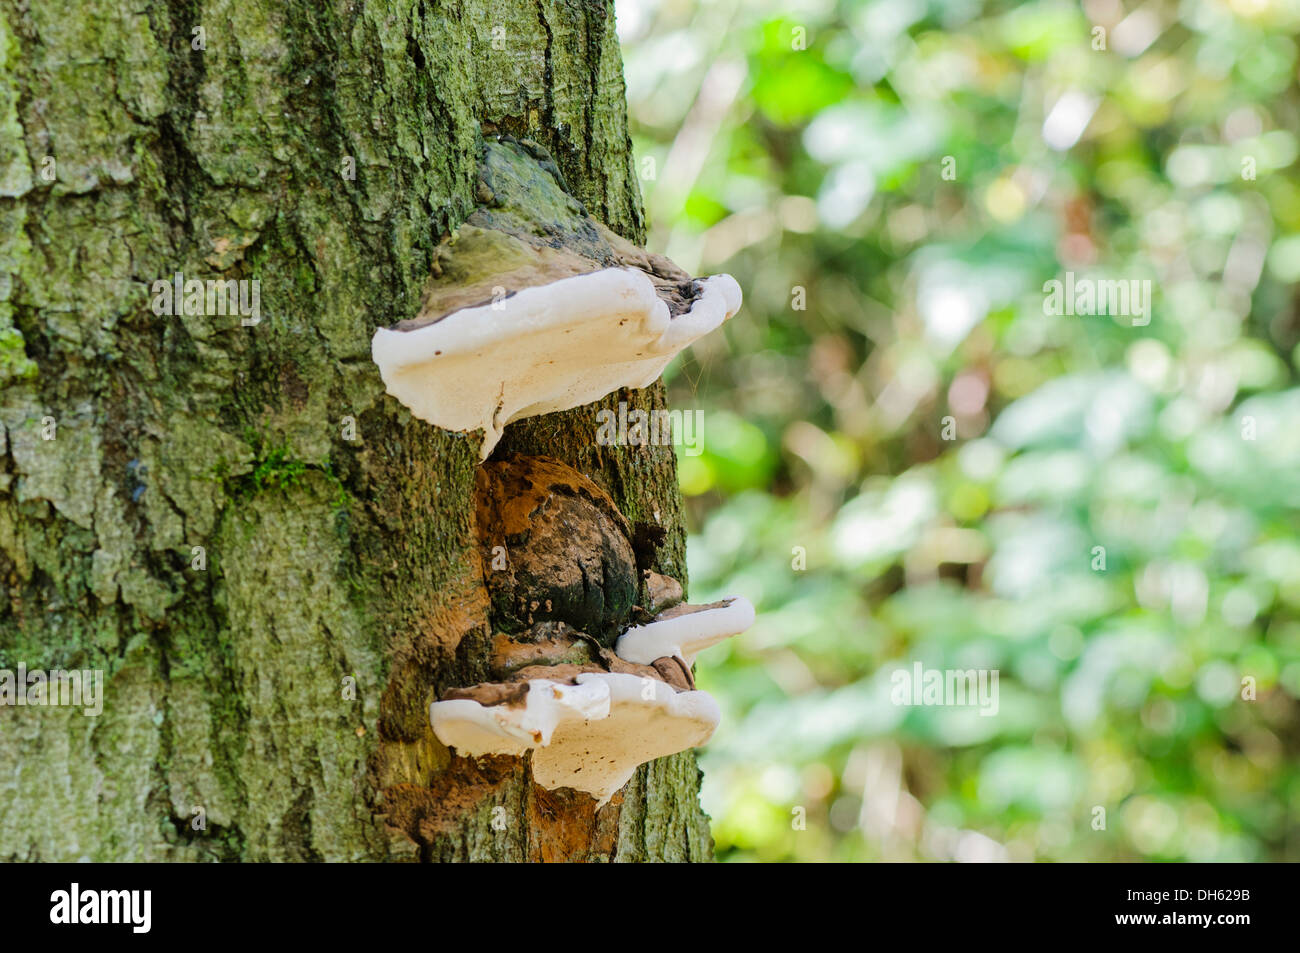 Razor strop fungus (piptoporus betulinus) growing on a tree Stock Photo